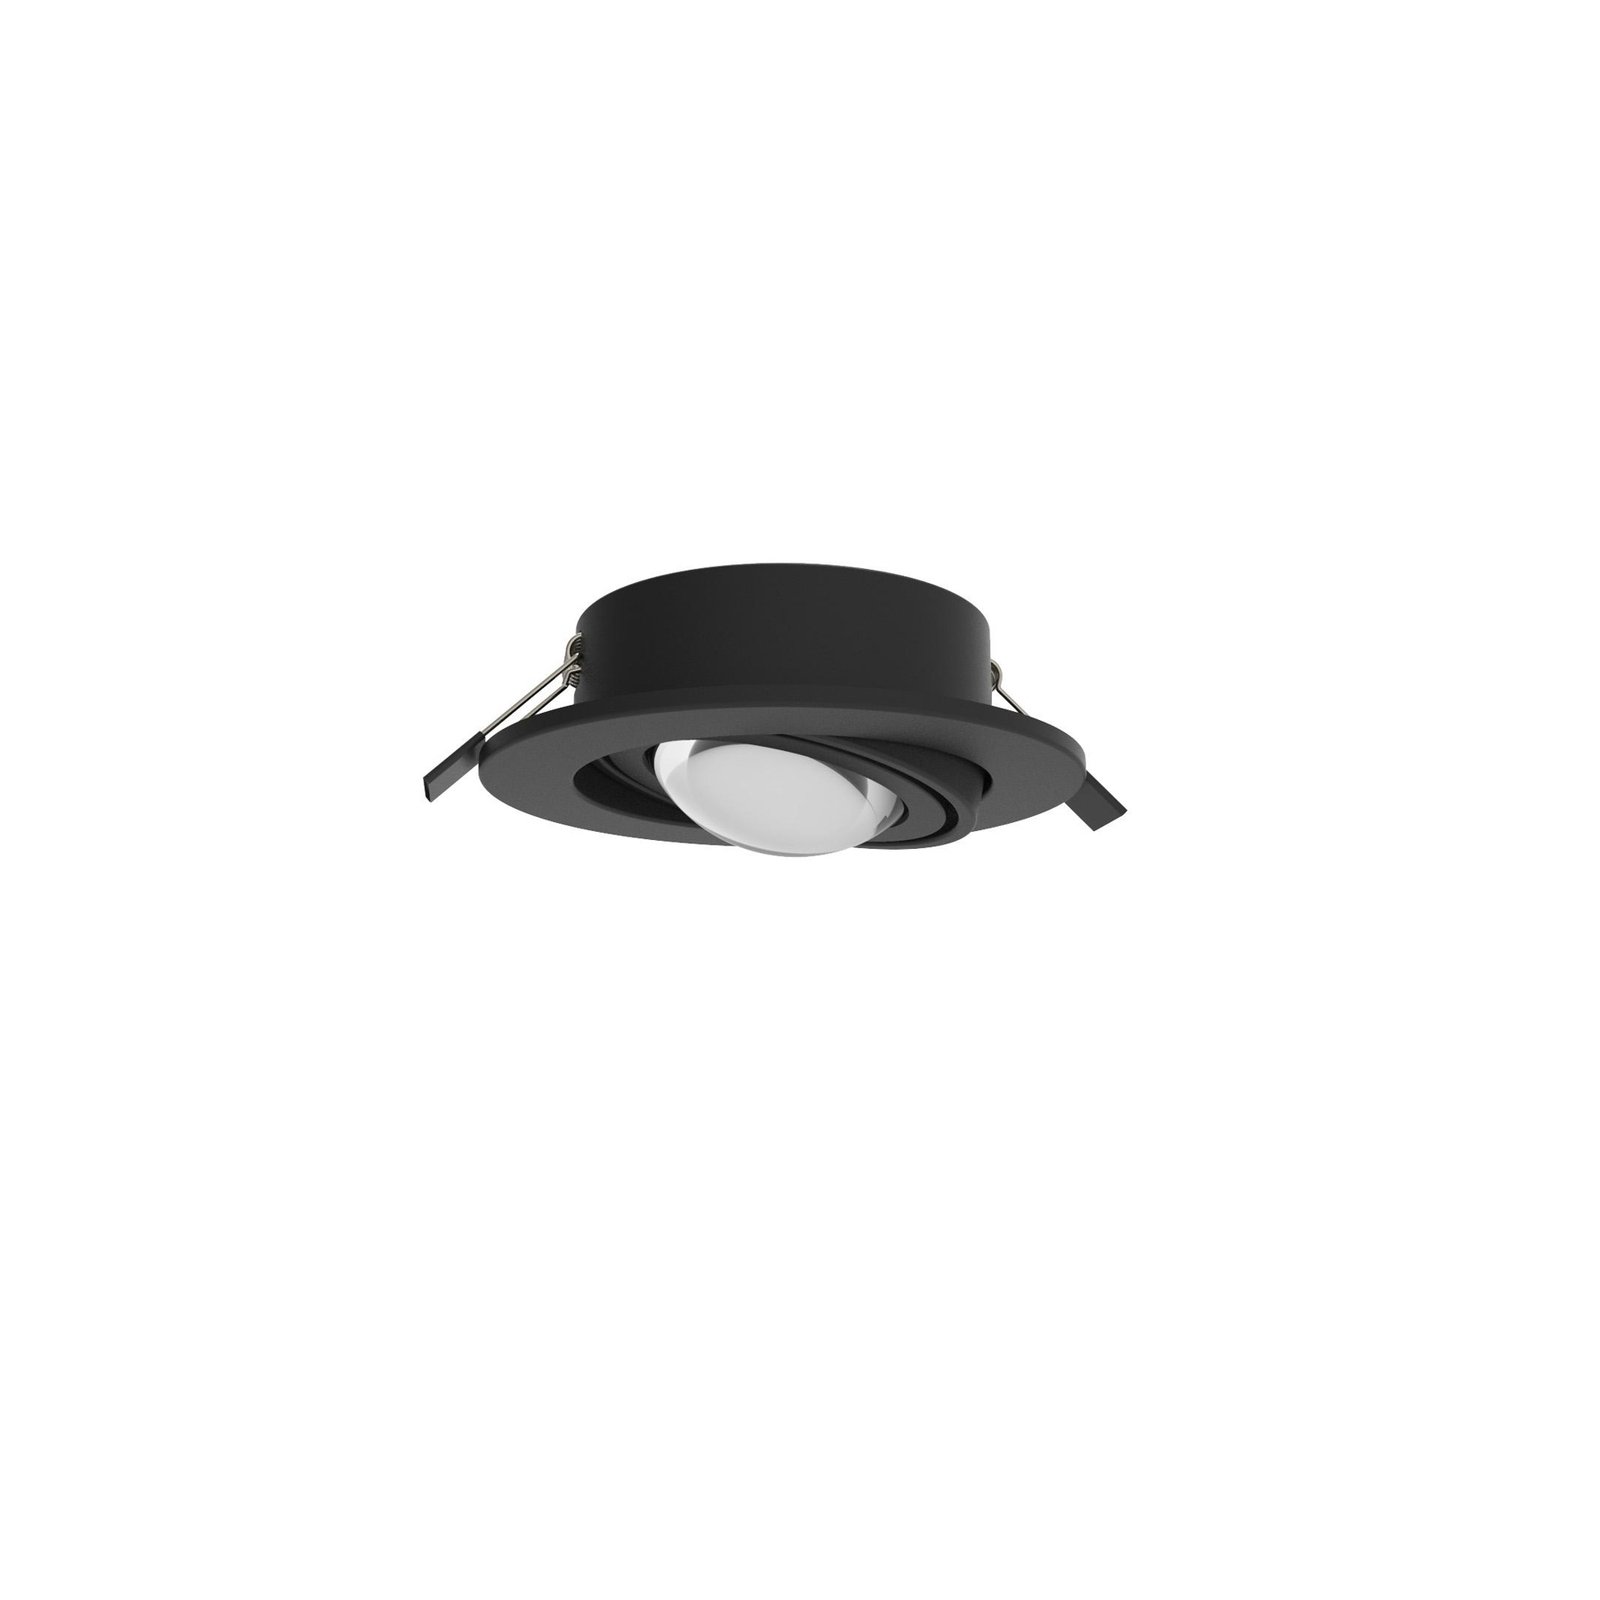 MEGATRON LED vestavné bodové svítidlo Planex Powerlens, 4,8 W, černé